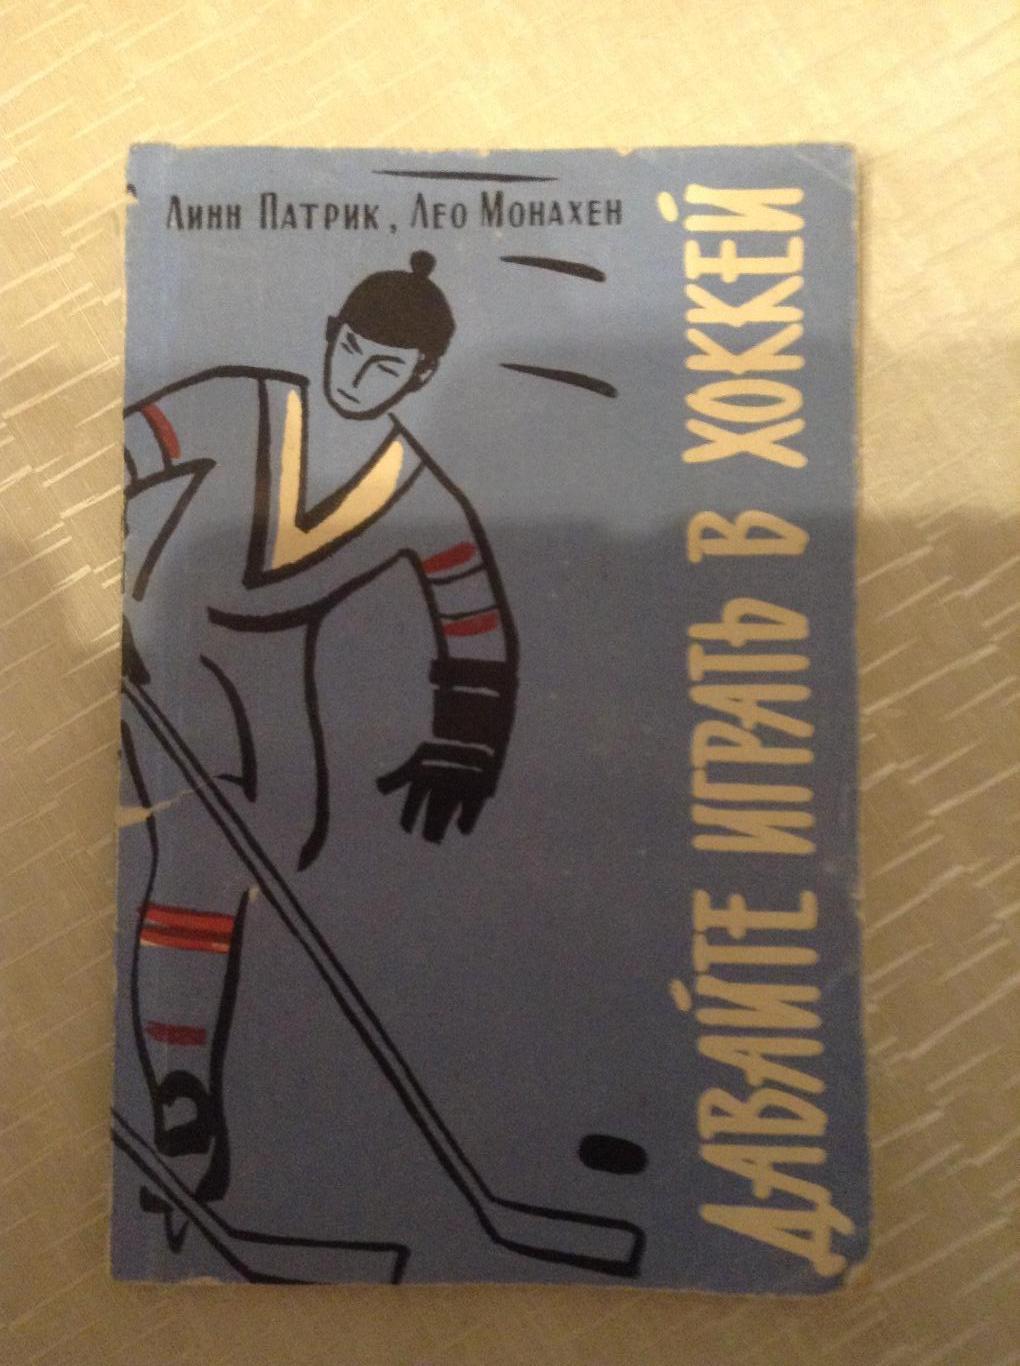 Линн Патрик Давайте играть в хоккей 98 стр.1961 г. Тираж 20 000